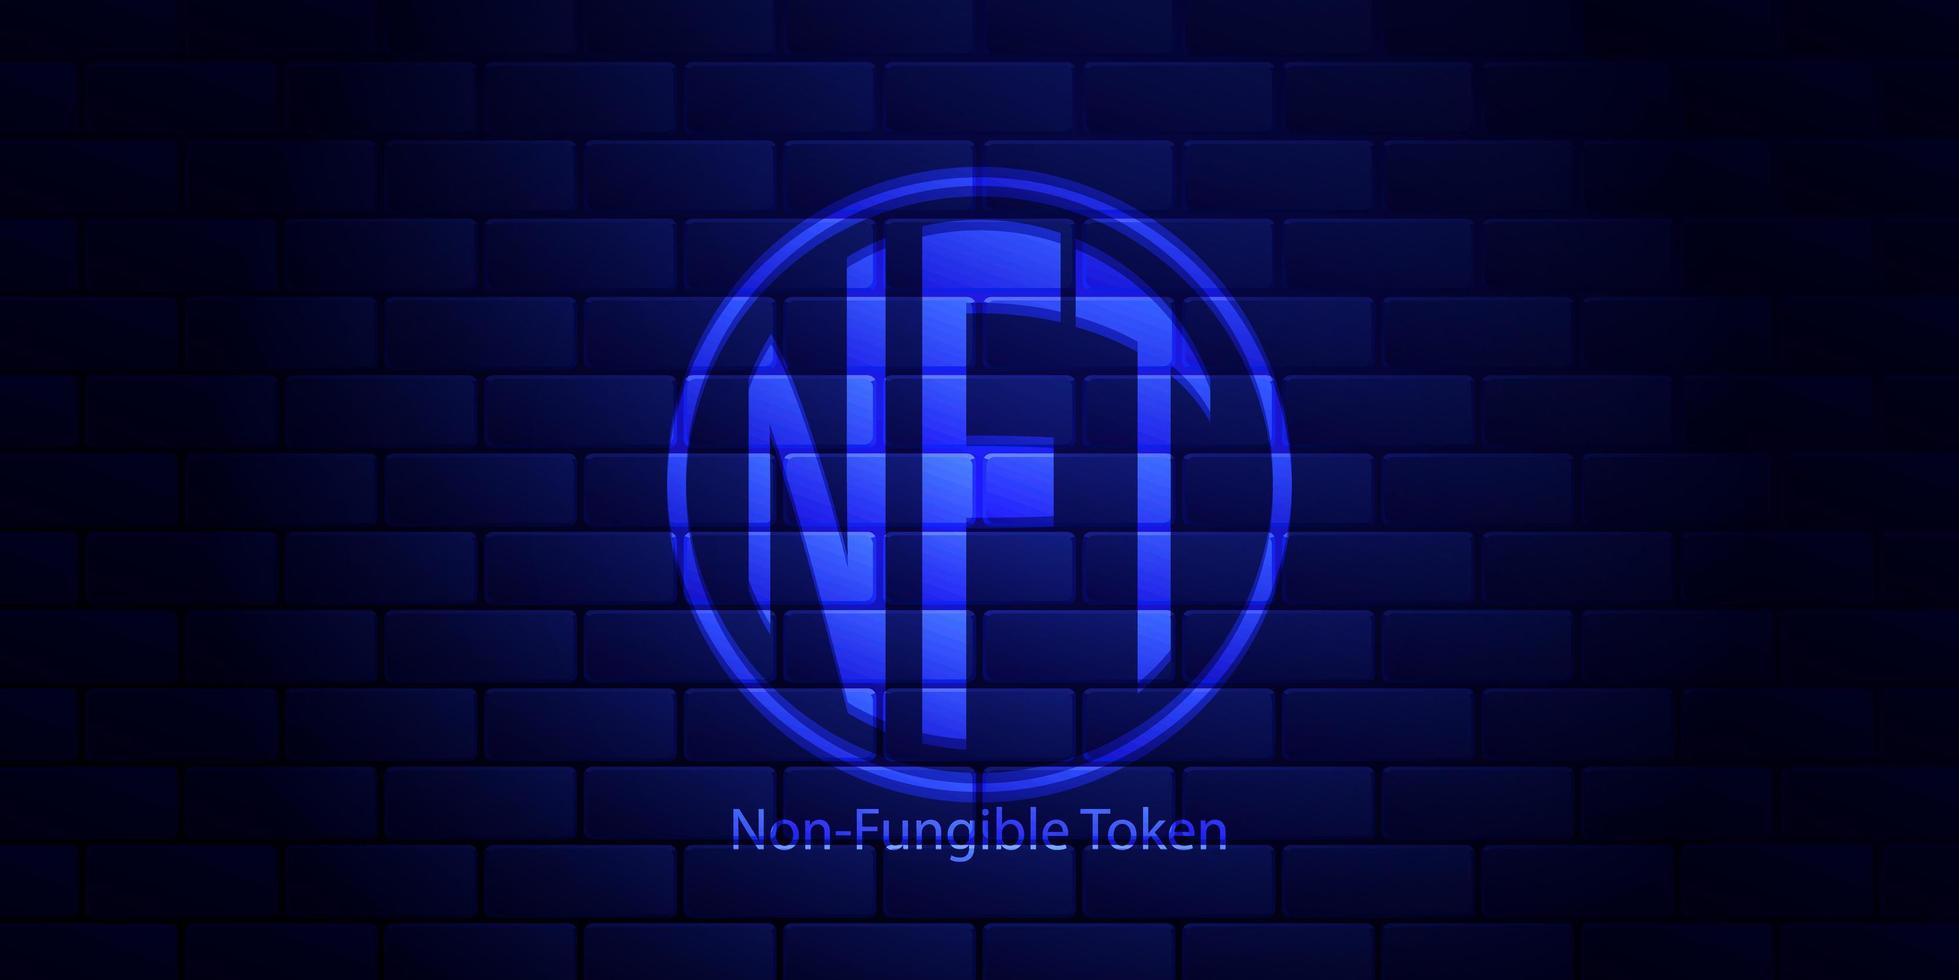 conceito banner NFT tokens não fungíveis em fundo azul escuro. parede de tijolo azul escuro. ilustração vetorial. vetor